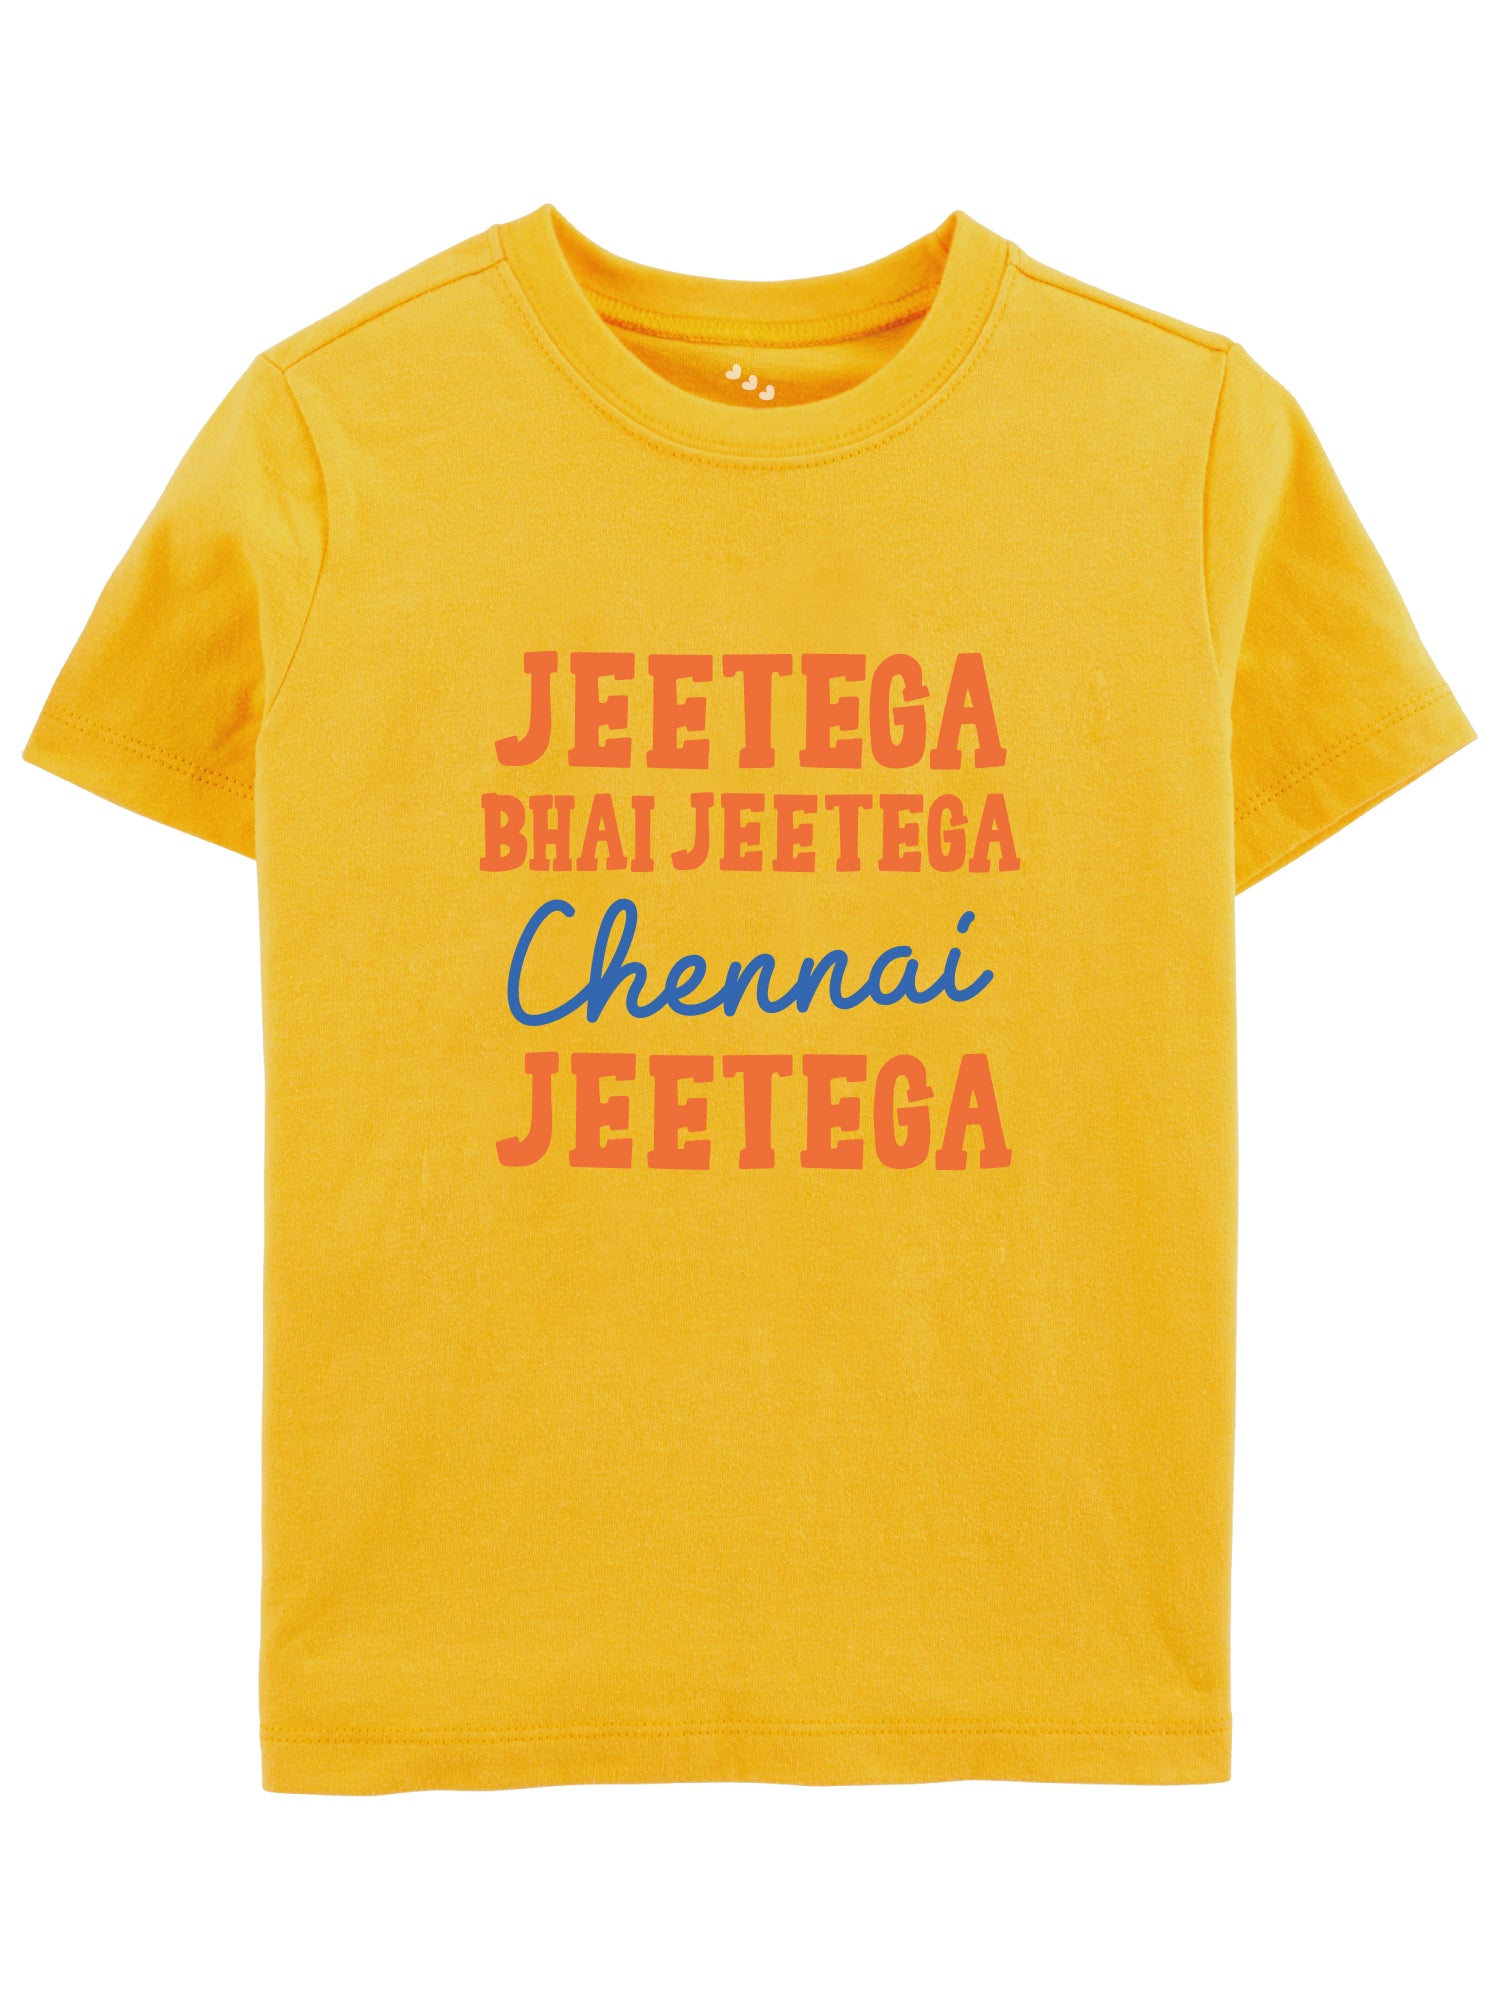 Jeetega Bhai Jeetega Chennai Jeetega - Tee